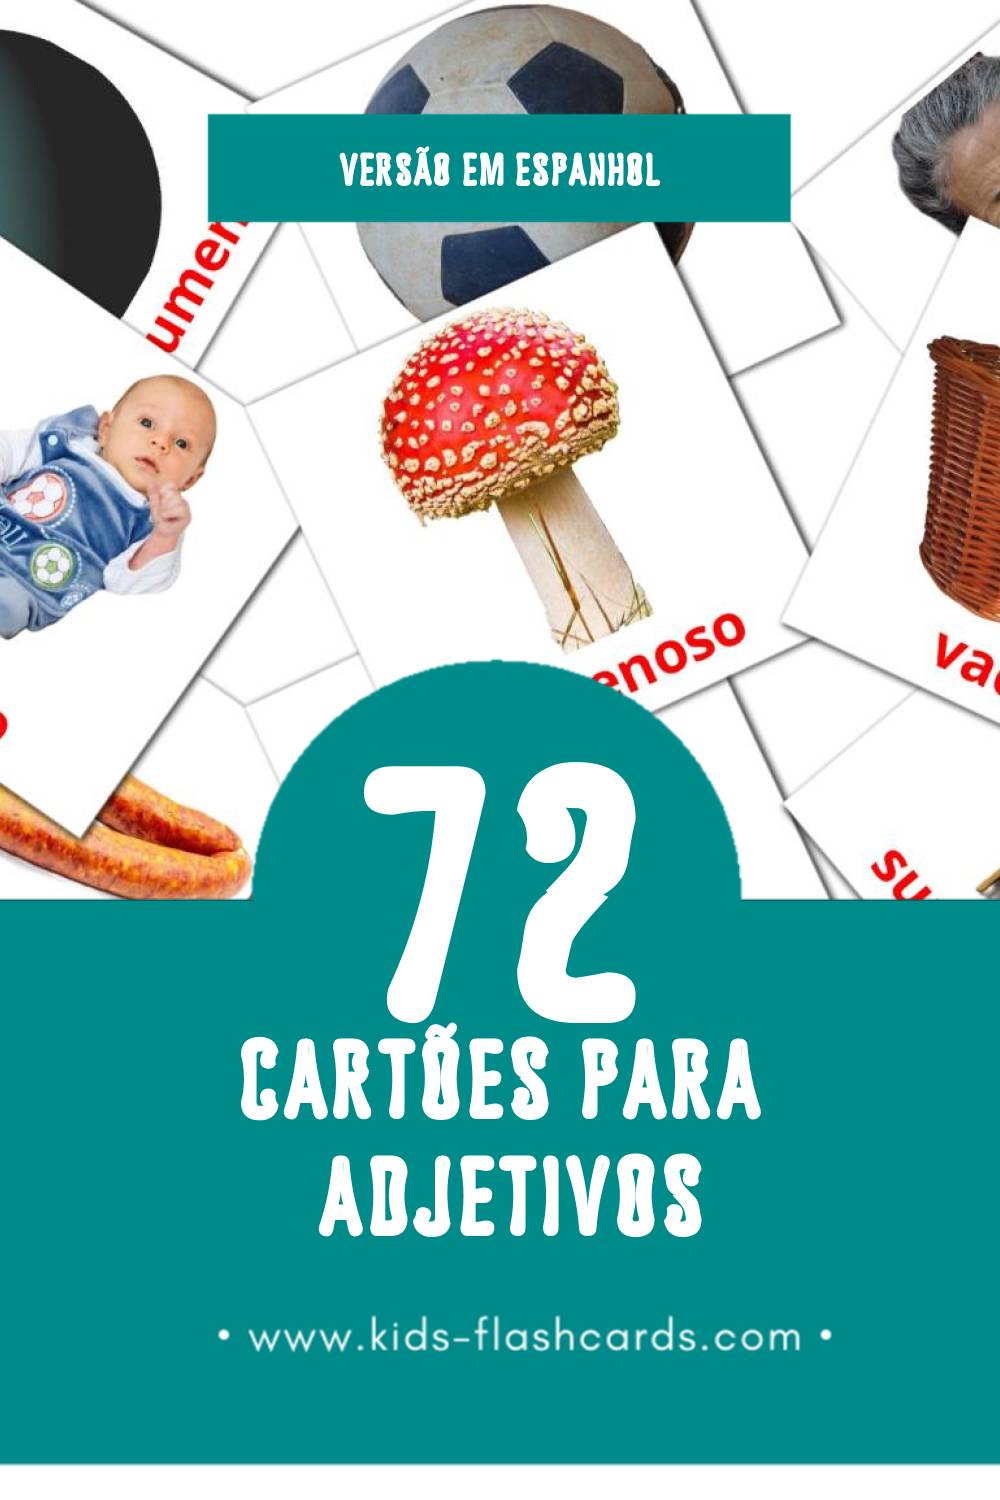 Flashcards de Adjetivos  Visuais para Toddlers (74 cartões em Espanhol)